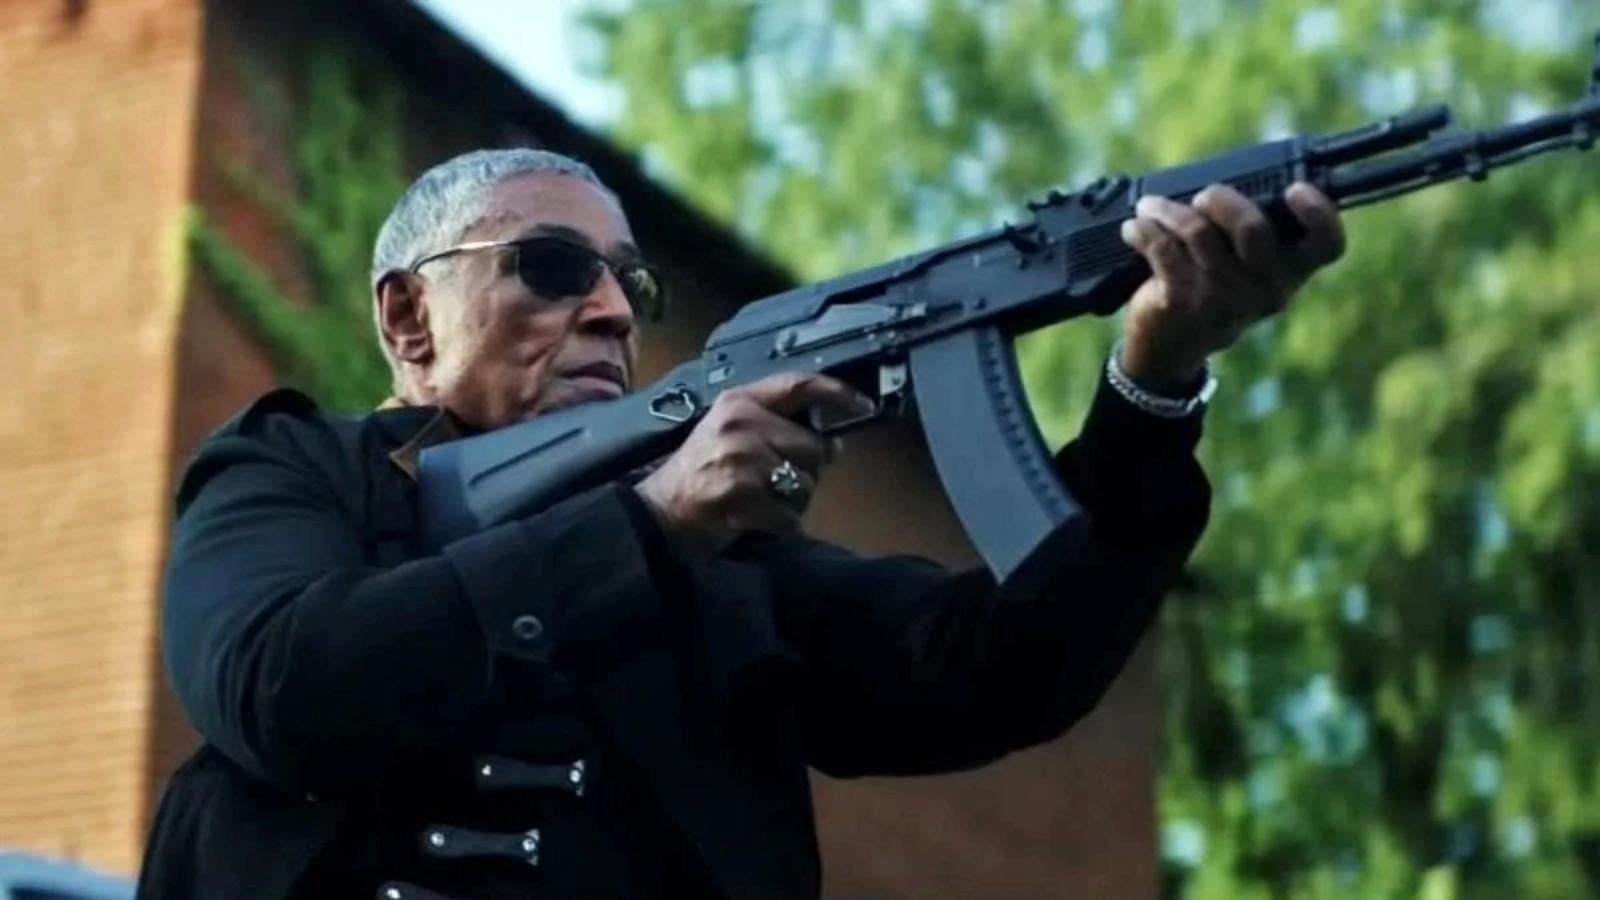 Giancarlo Esposito in the Captain America 4 trailer, holding a gun